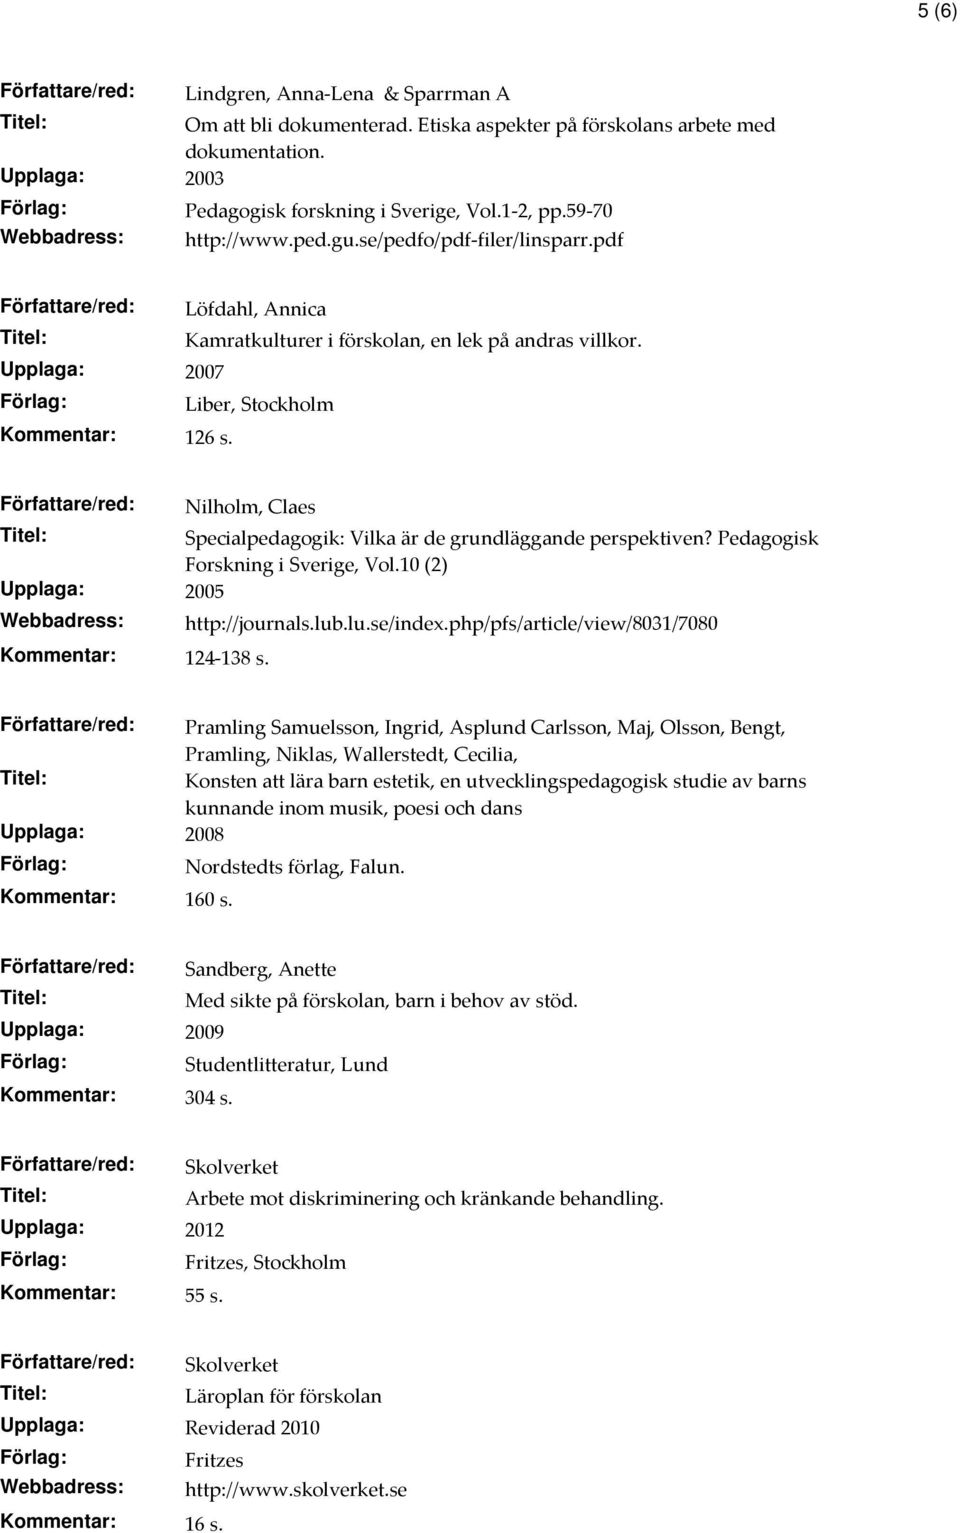 Författare/red: Nilholm, Claes Specialpedagogik: Vilka är de grundläggande perspektiven? Pedagogisk Forskning i Sverige, Vol.10 (2) Upplaga: 2005 Kommentar: 124-138 s. http://journals.lub.lu.se/index.